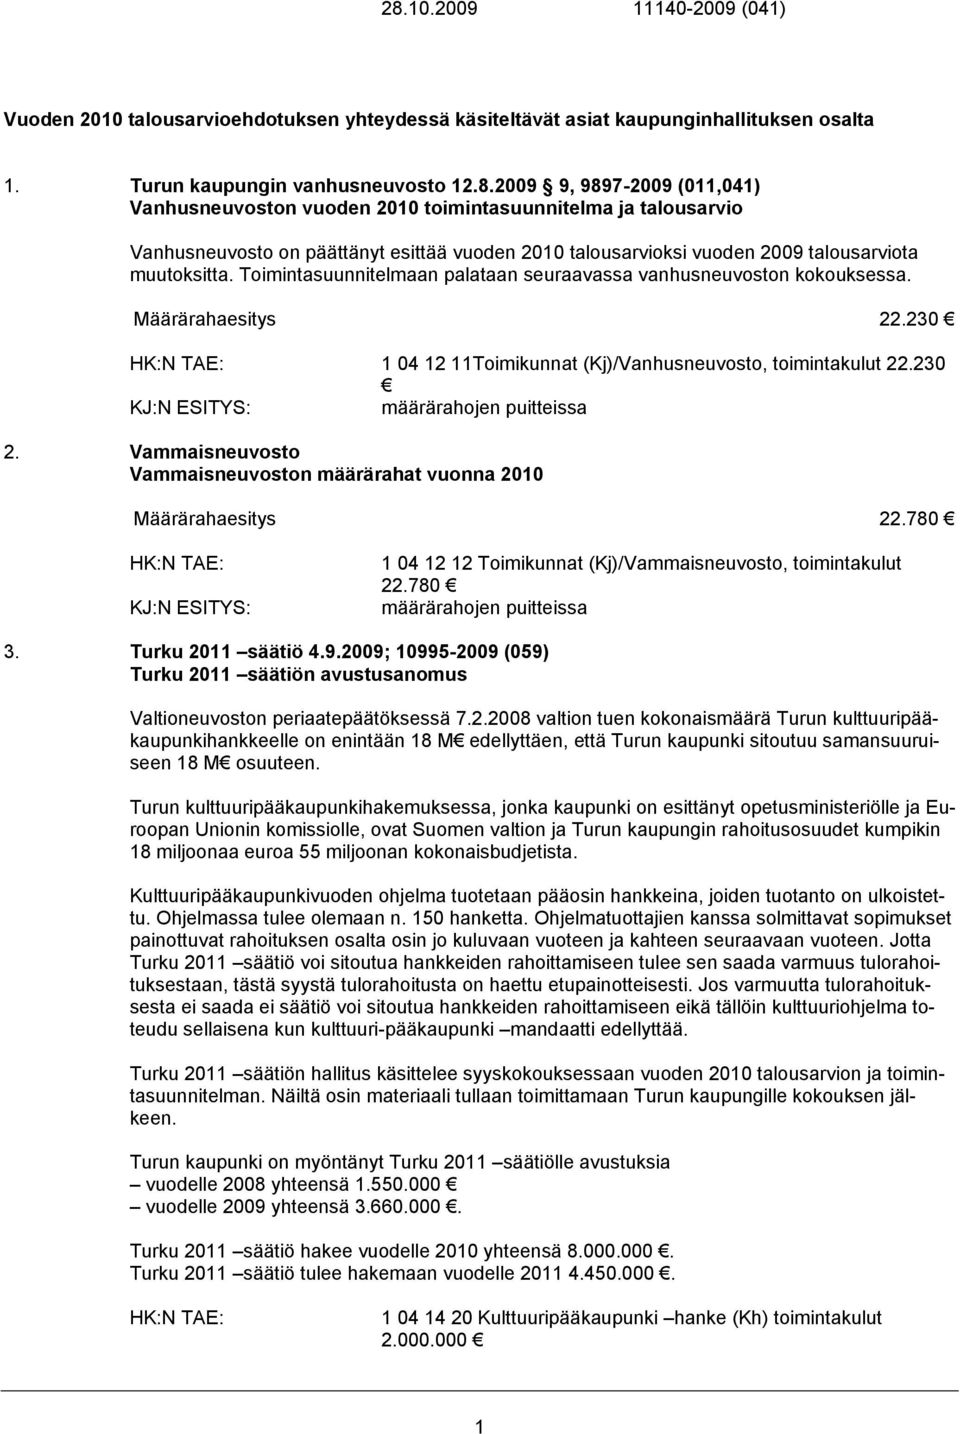 Vammaisneuvosto Vammaisneuvoston määrärahat vuonna 2010 Määrärahaesitys 22.780 1 04 12 12 Toimikunnat (Kj)/Vammaisneuvosto, toimintakulut 22.780 3. Turku 2011 säätiö 4.9.